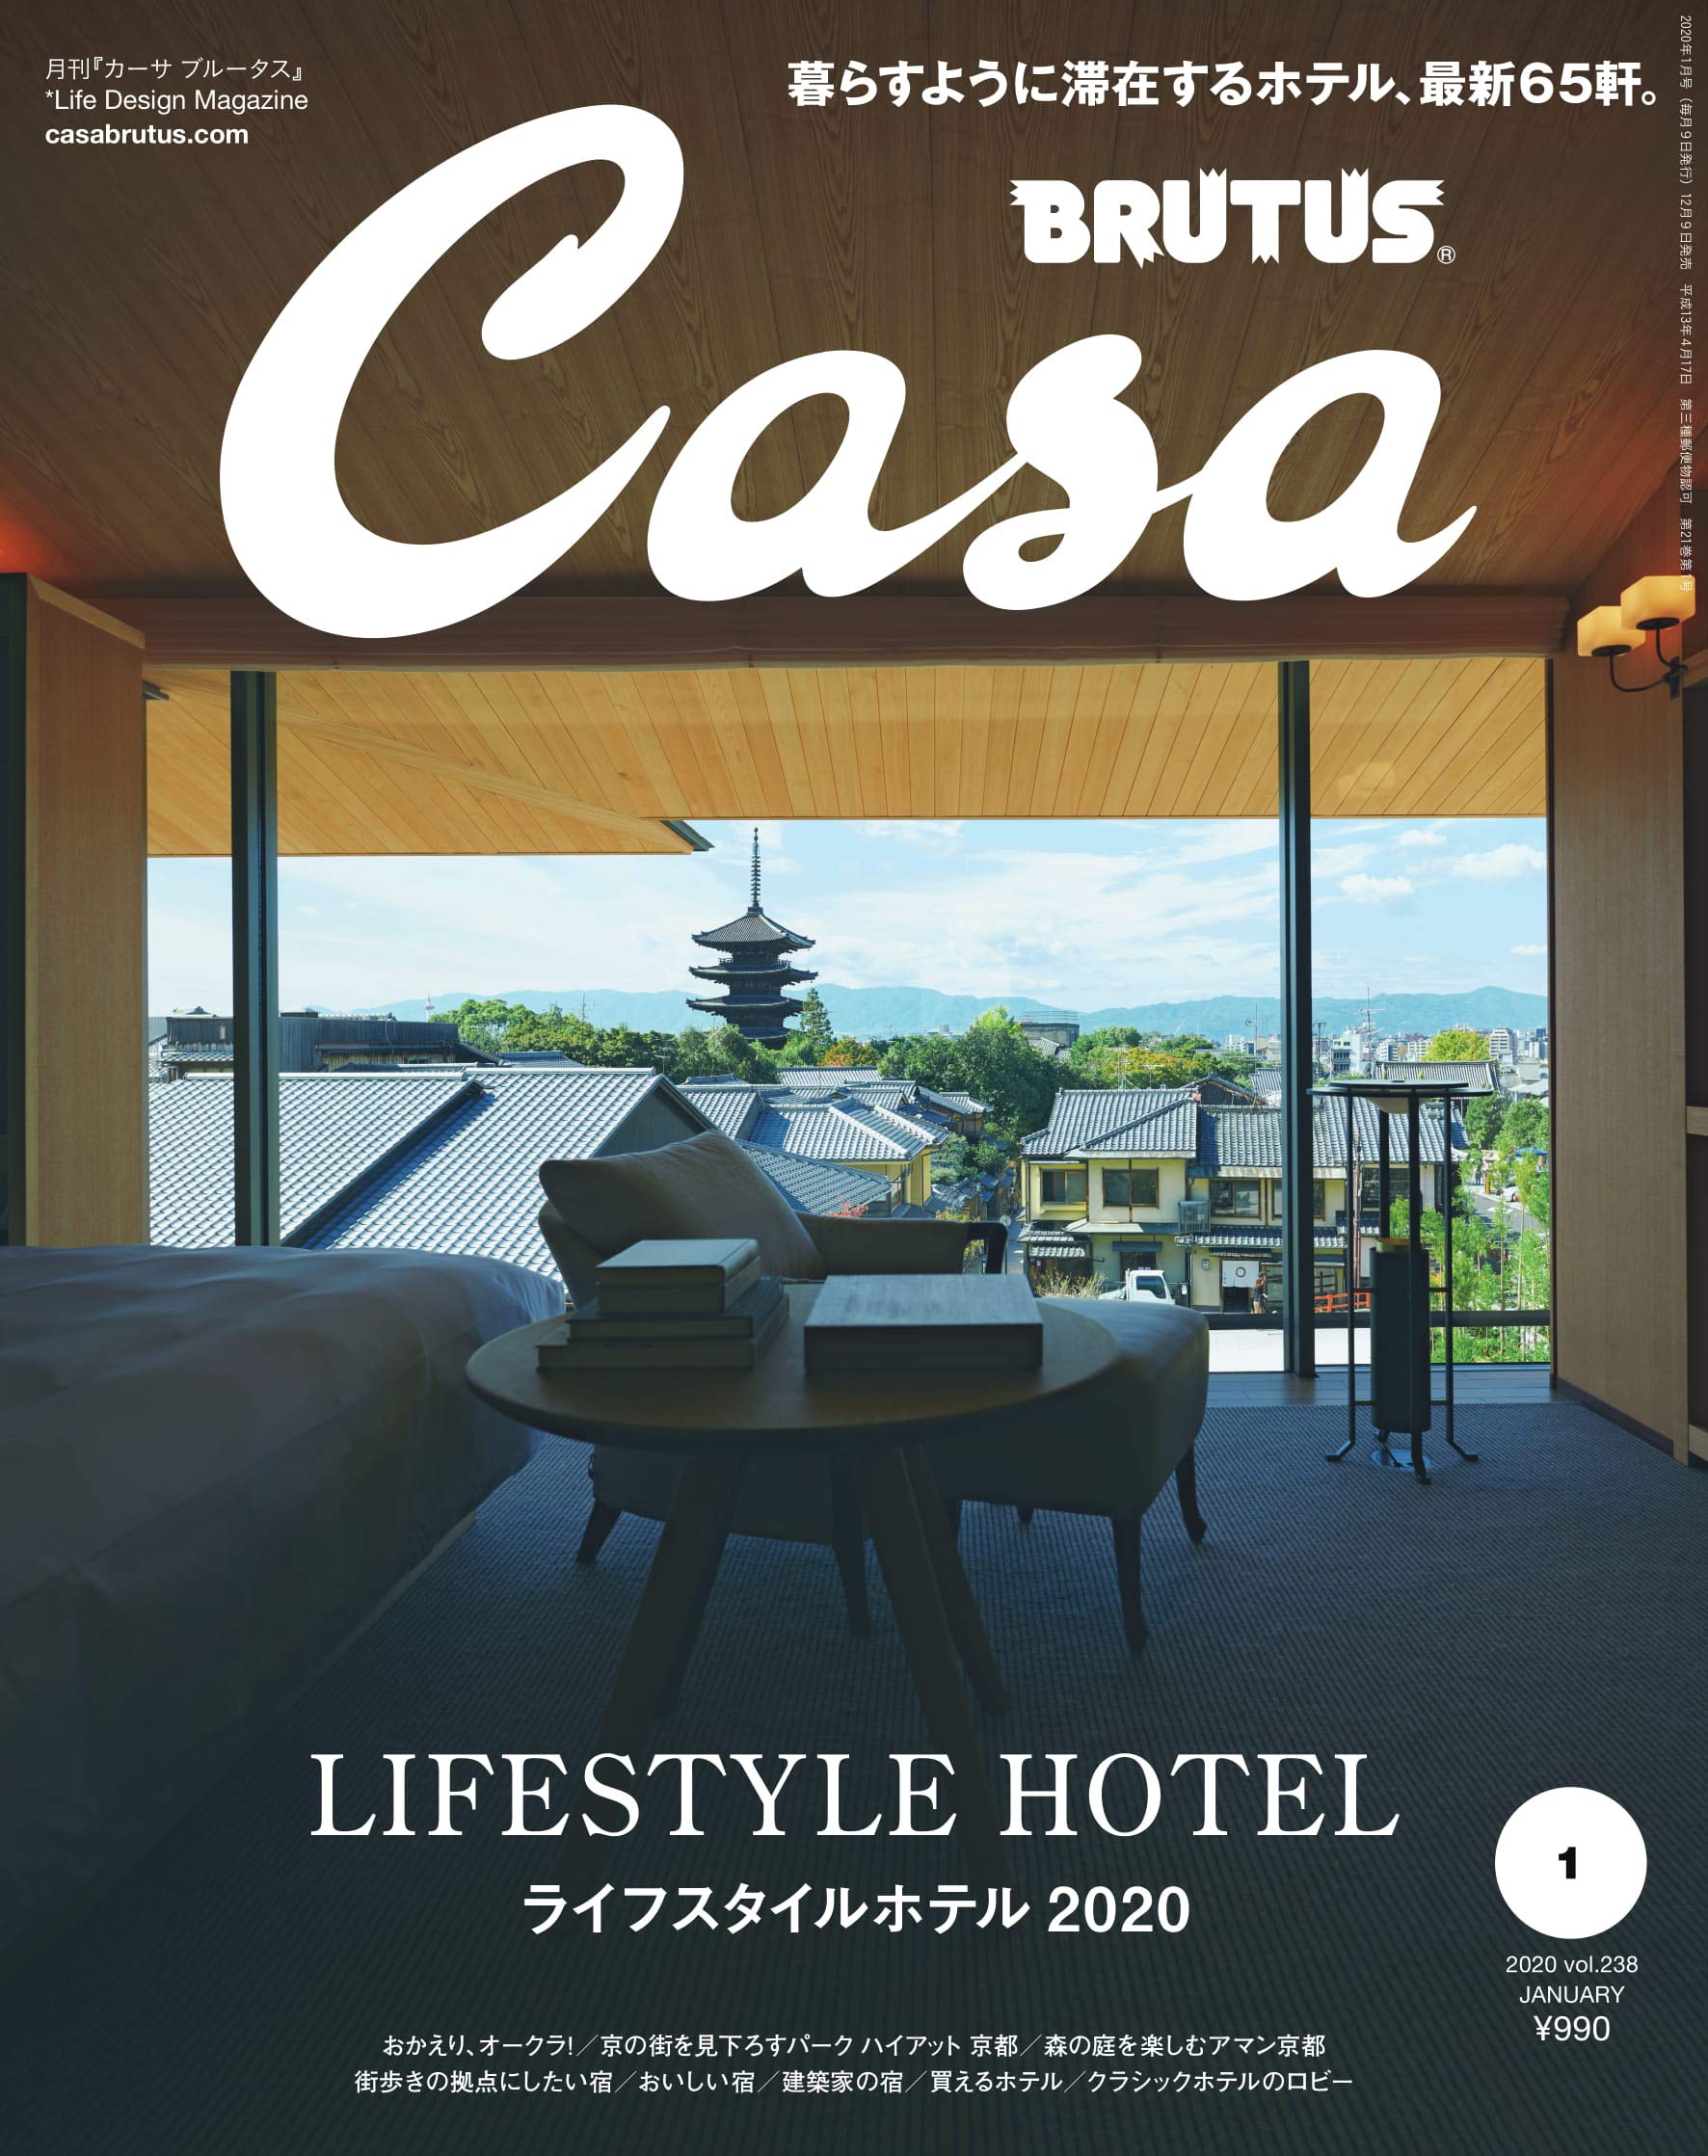 Casa BRUTUS(カ-サ ブル-タス) 2020年 1月號 [ライフスタイルホテル2020]